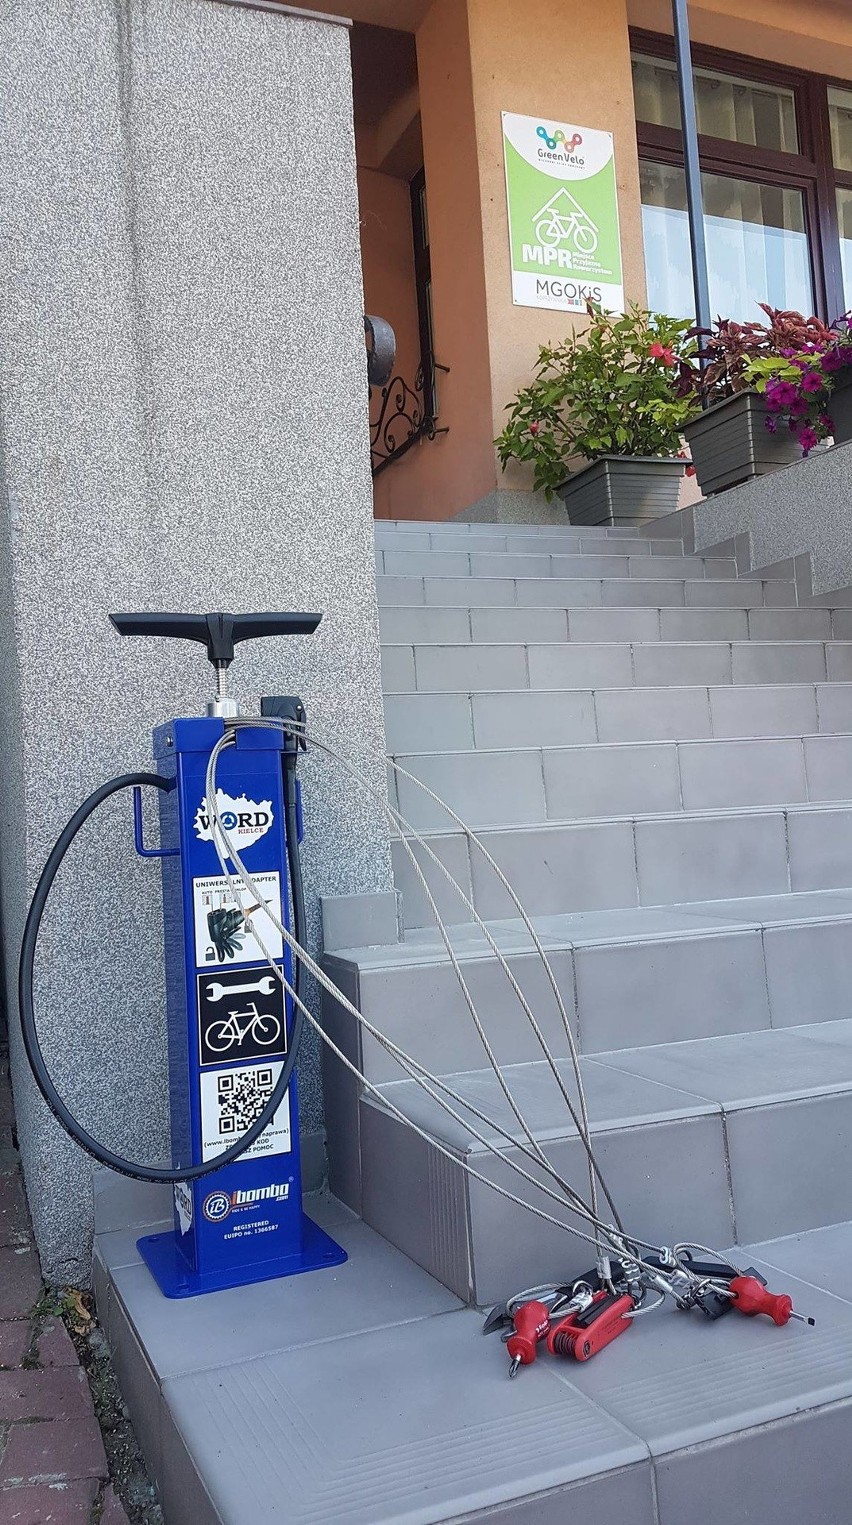 Stacja naprawy rowerów została zamontowana przed budynkiem domu kultury w Koprzywnicy 